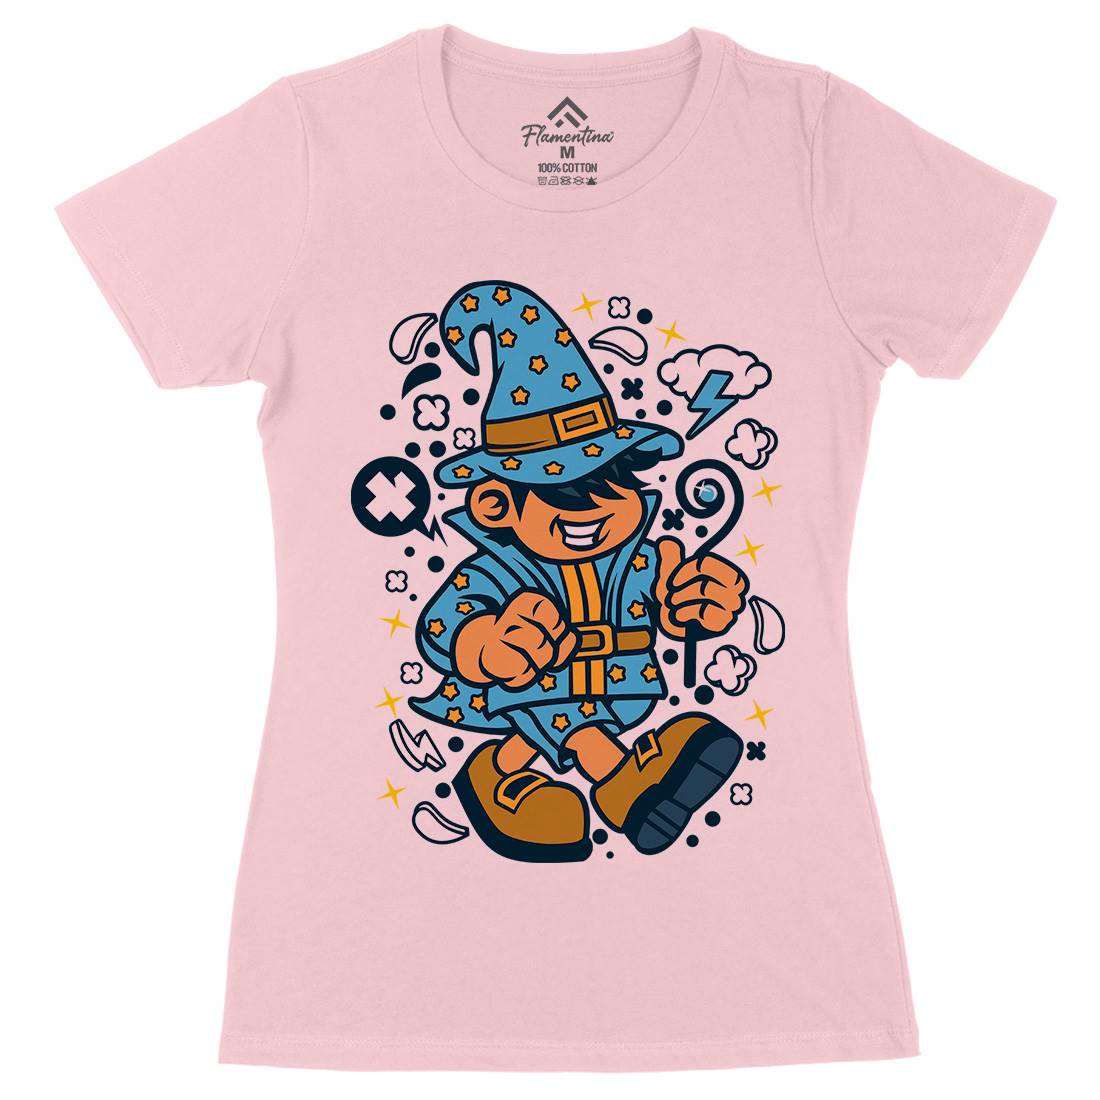 Wizard Kid Womens Organic Crew Neck T-Shirt Retro C691